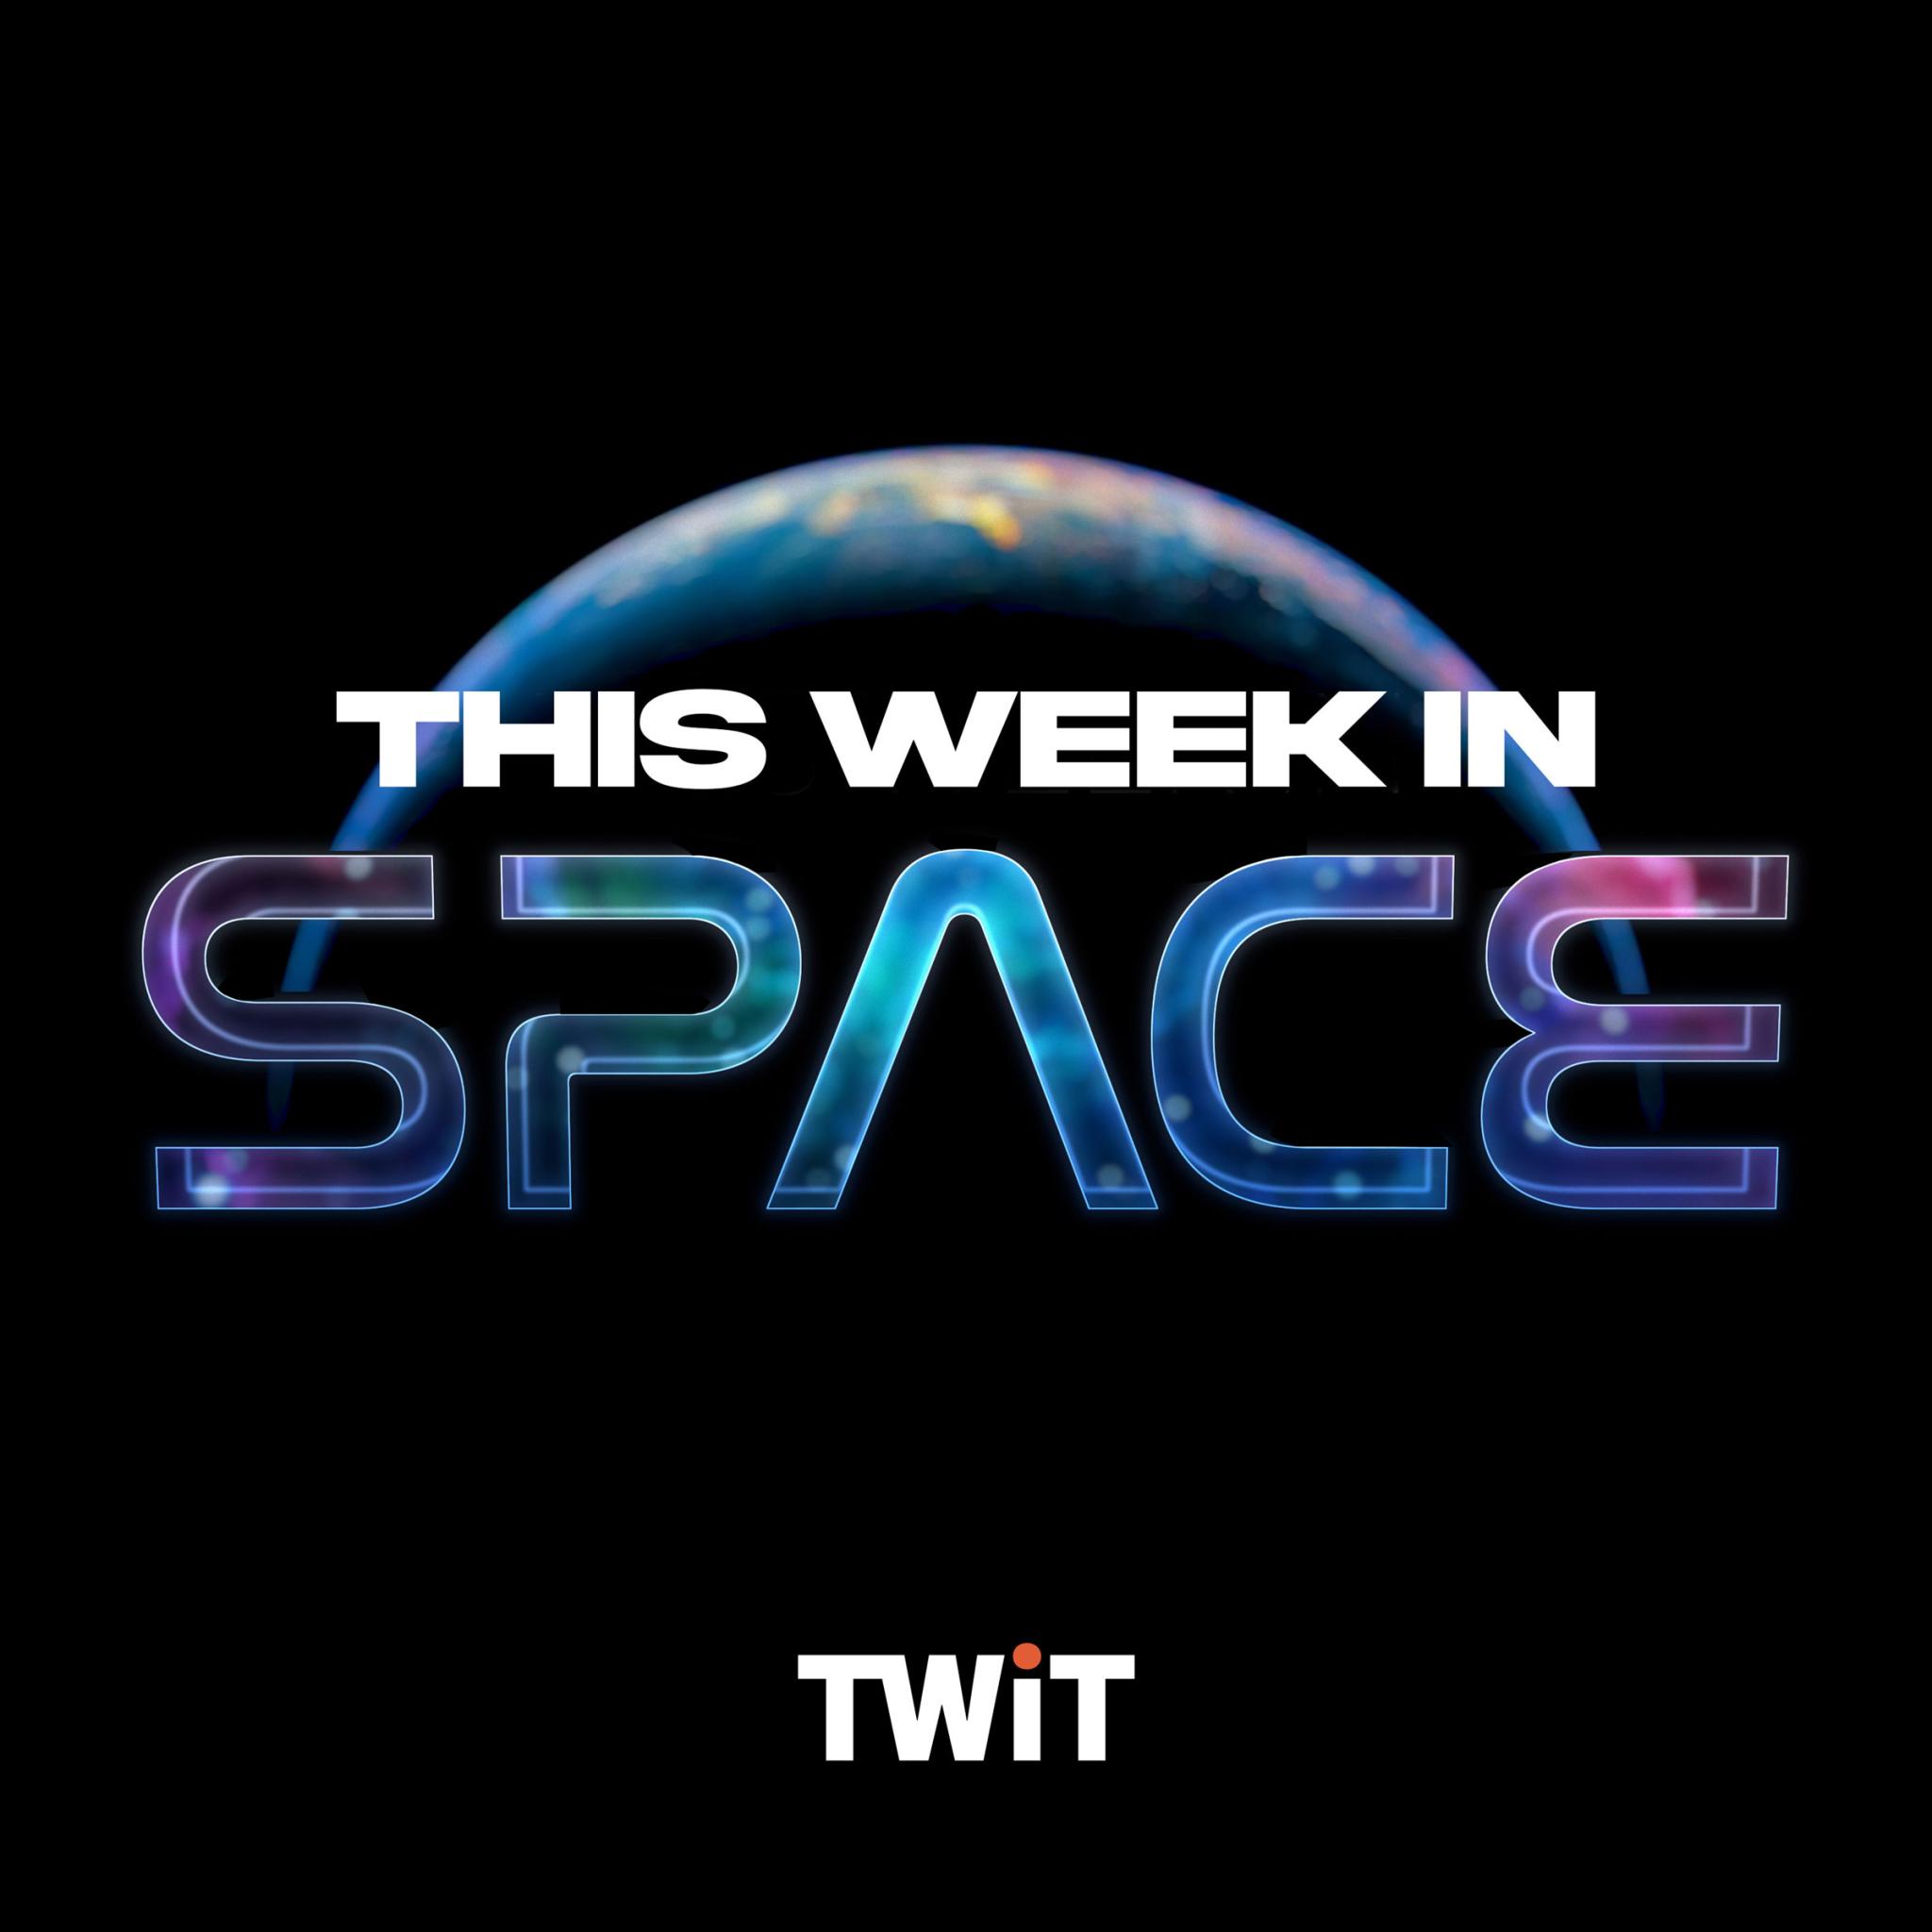 This Week in Space (Audio)